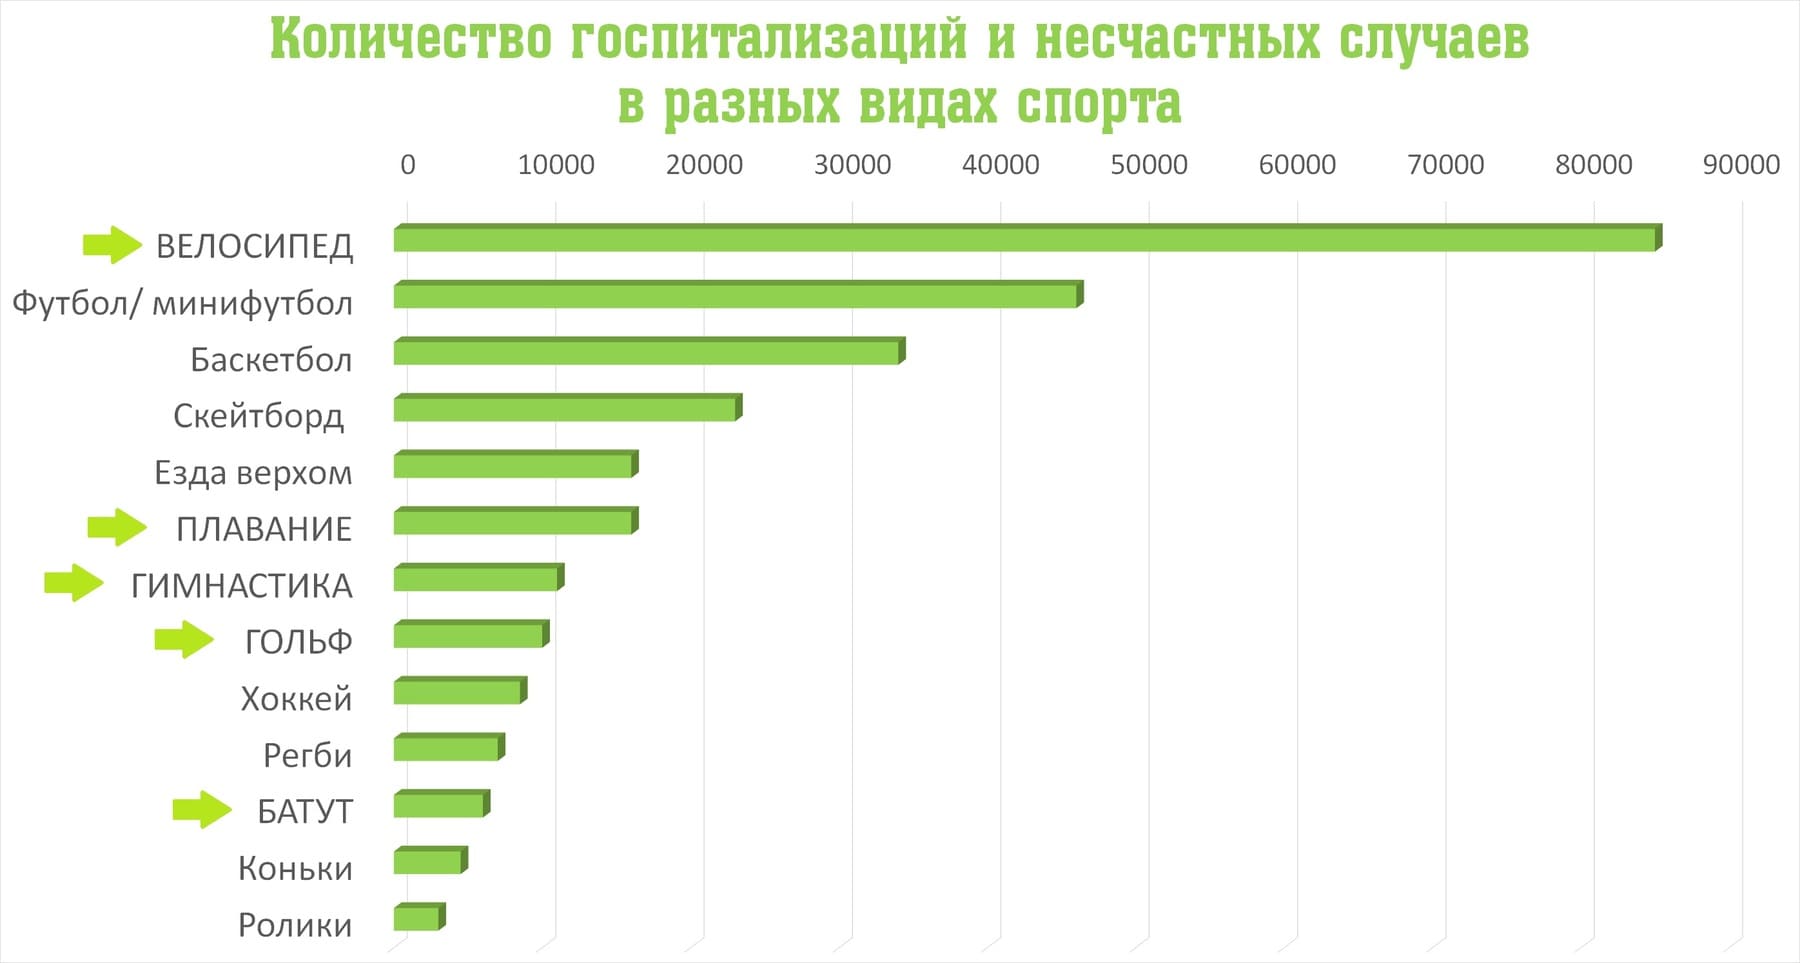 Самые популярные виды спорта в россии: топ-10